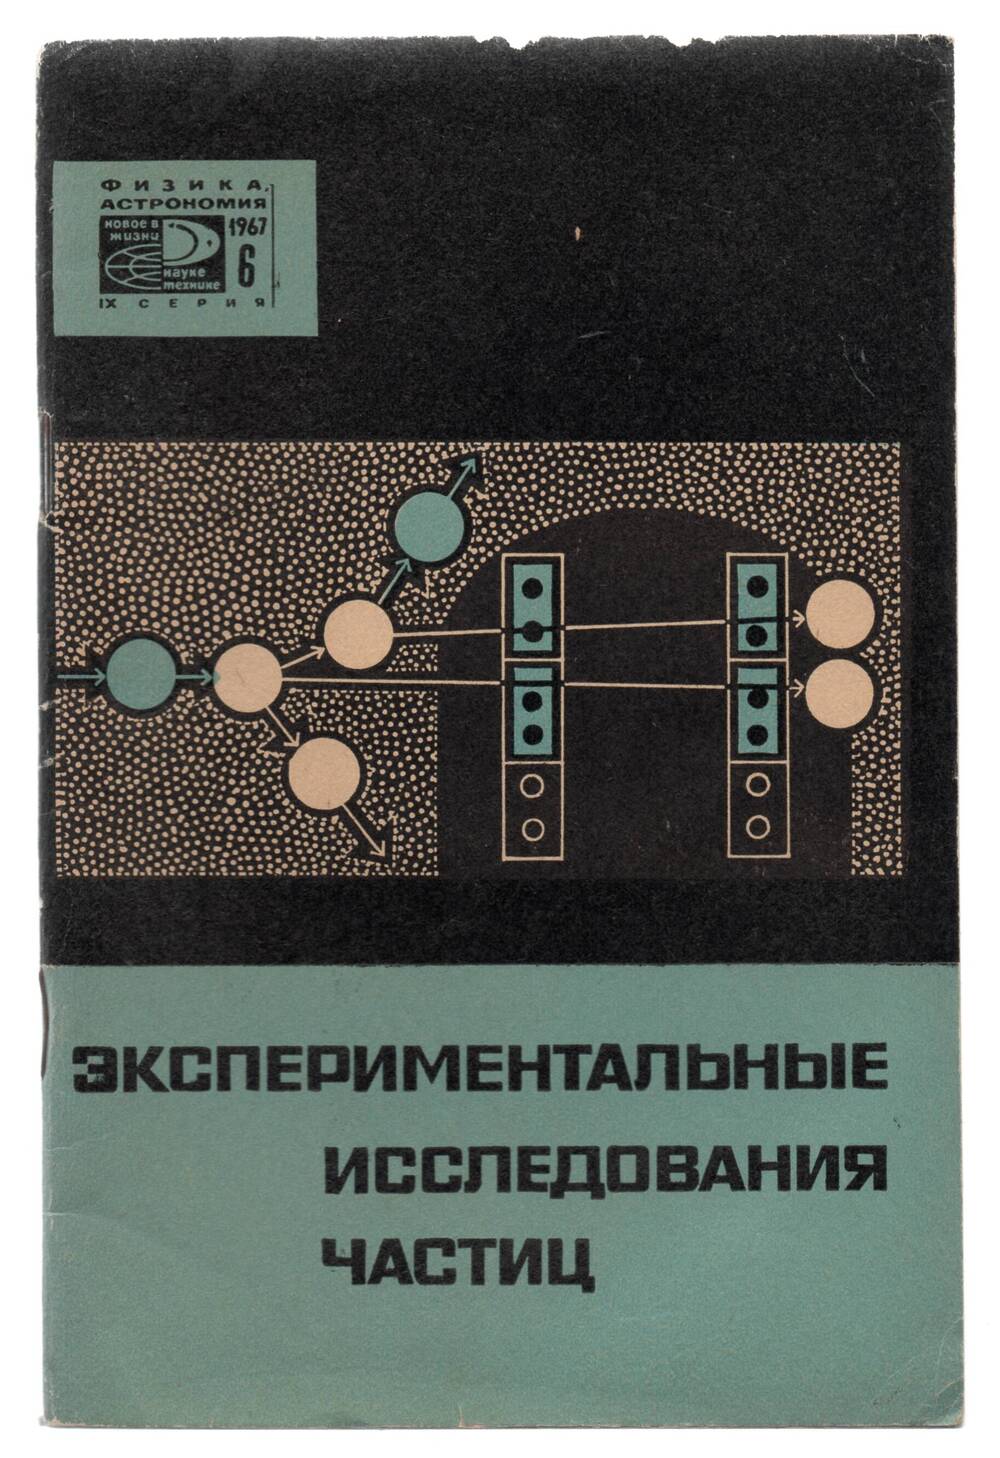 Брошюра сост. В.А. Угаров « Экспериментальные исследования частиц»  М. 1967г.